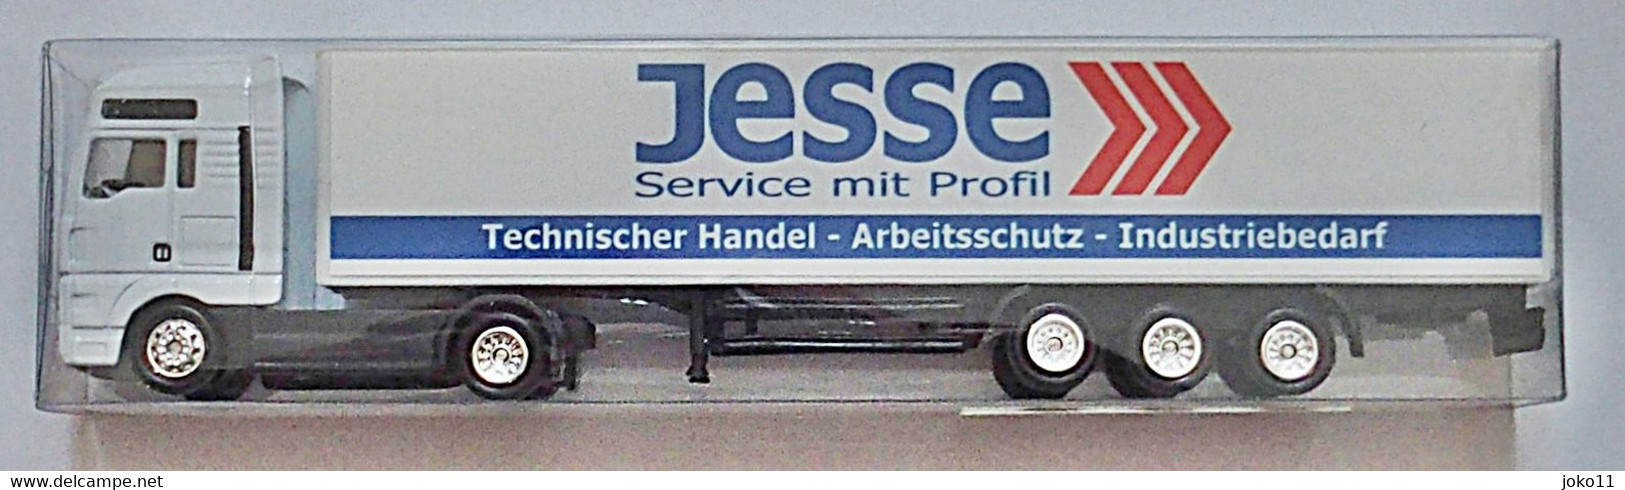 Werbetruck, Der Firma Jesse, OVP - Camion